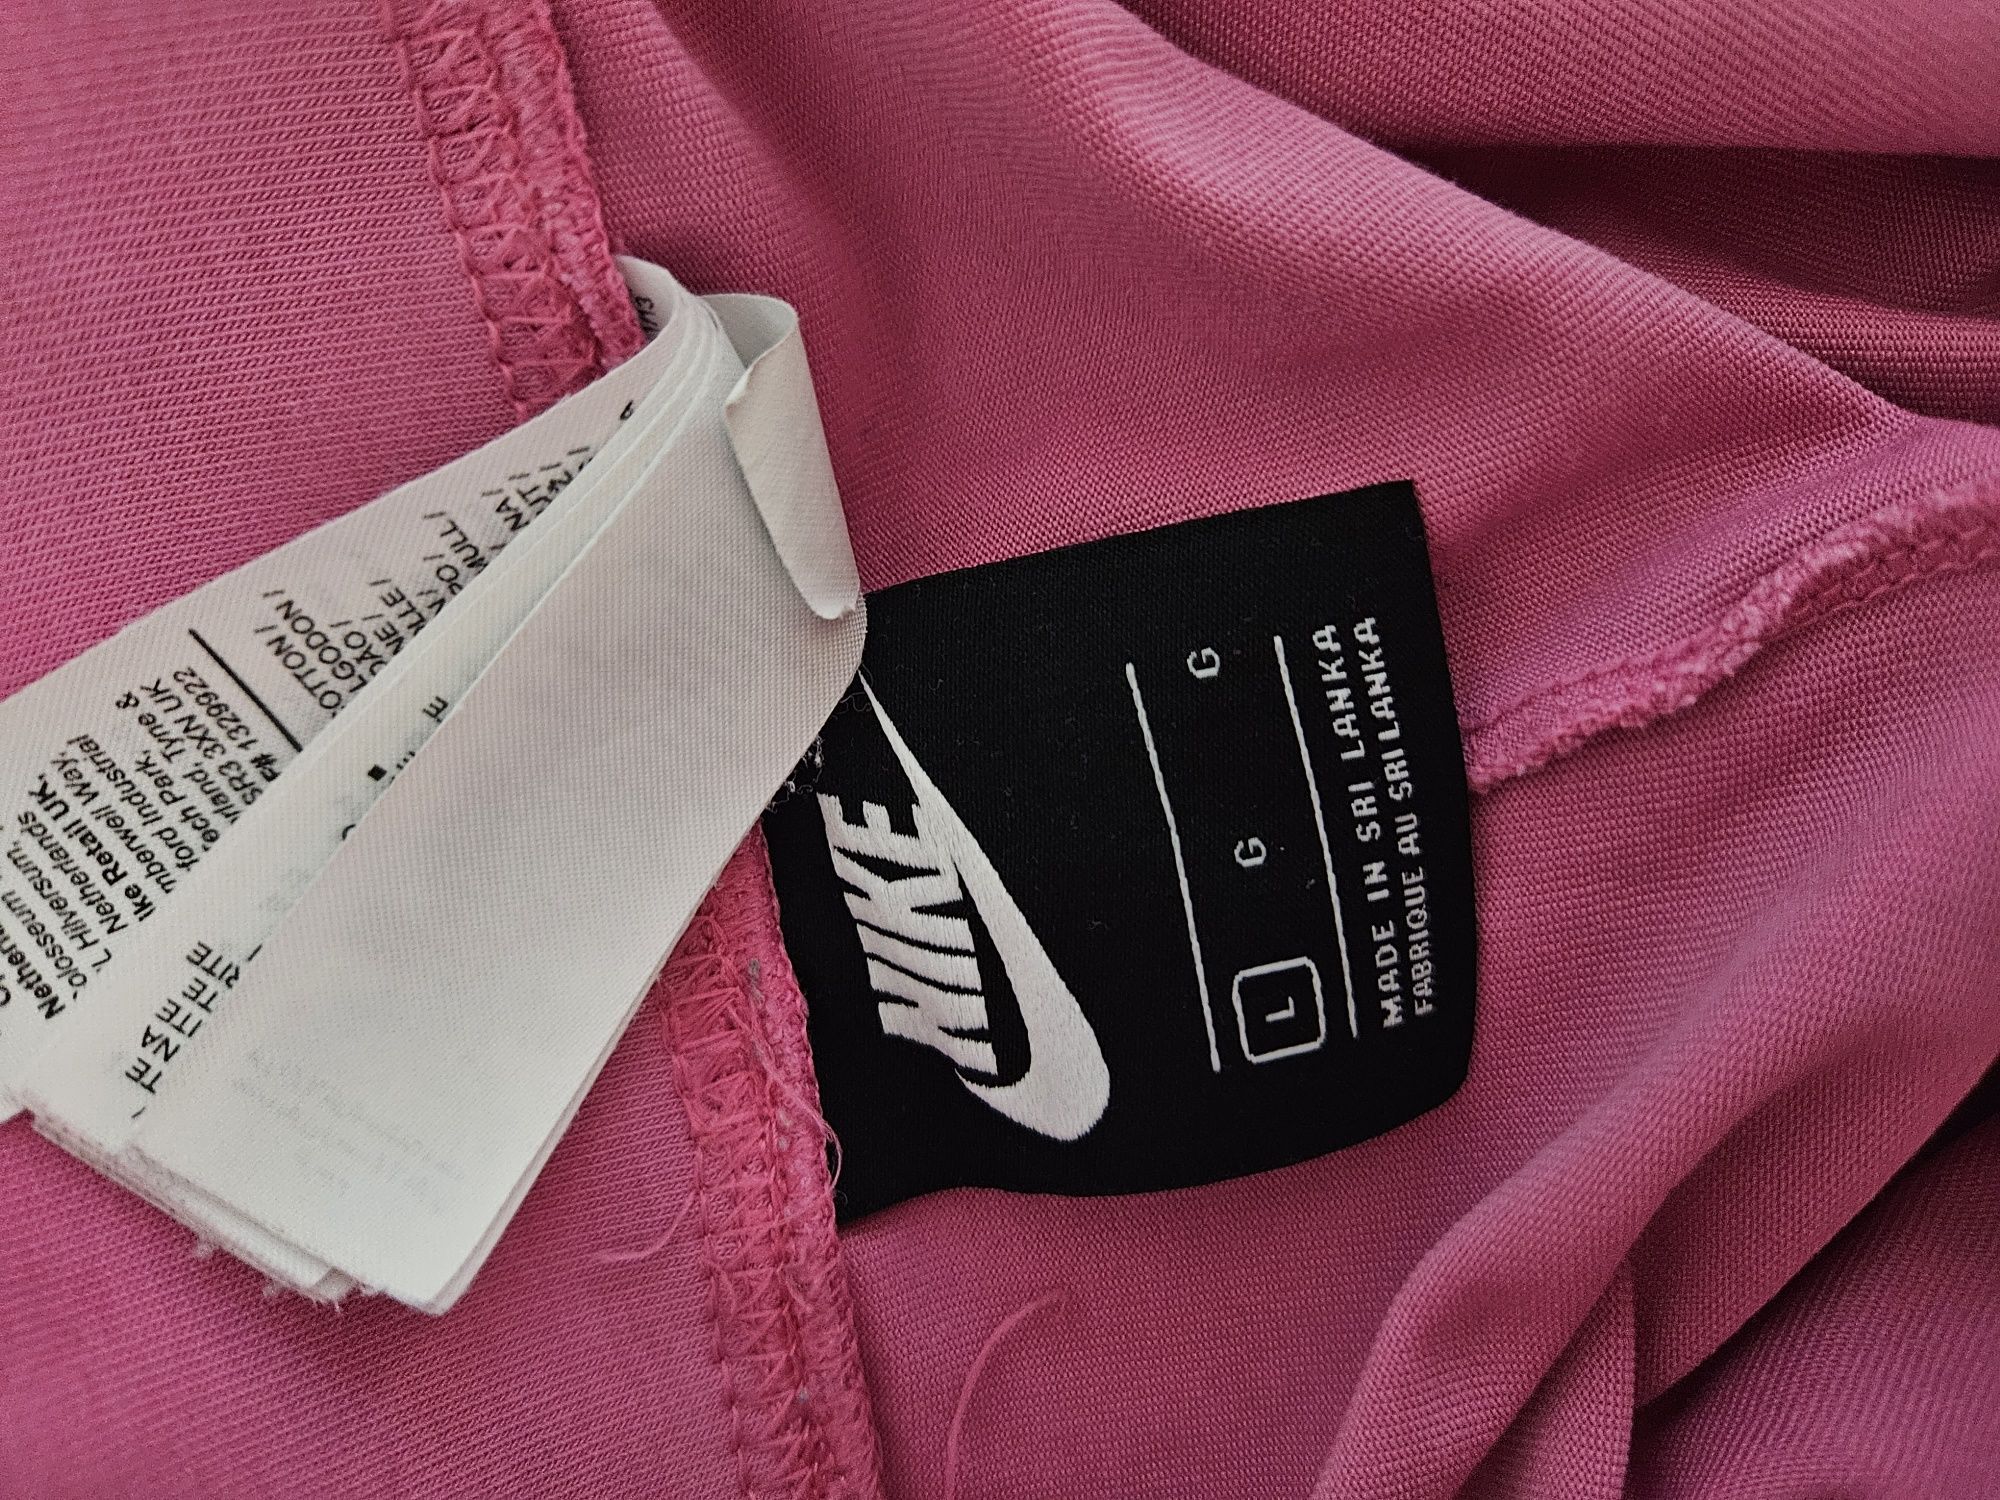 Leginsy różowe Nike rozm L